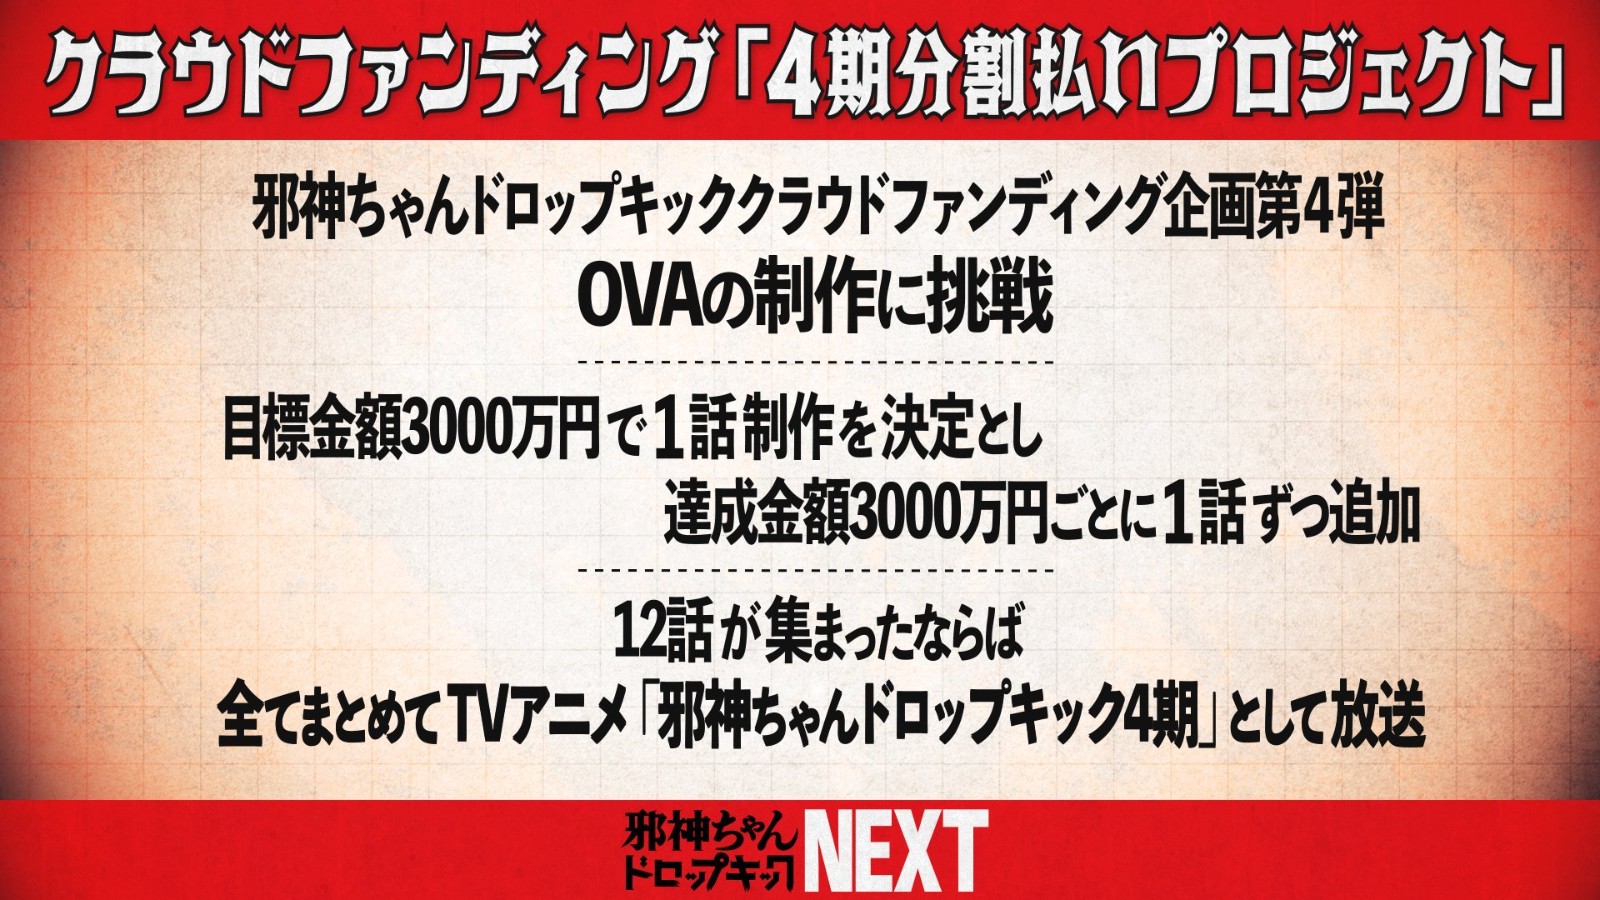 动画《邪神与厨二病少女》开启众筹OVA企划，35分钟突破3000万日元